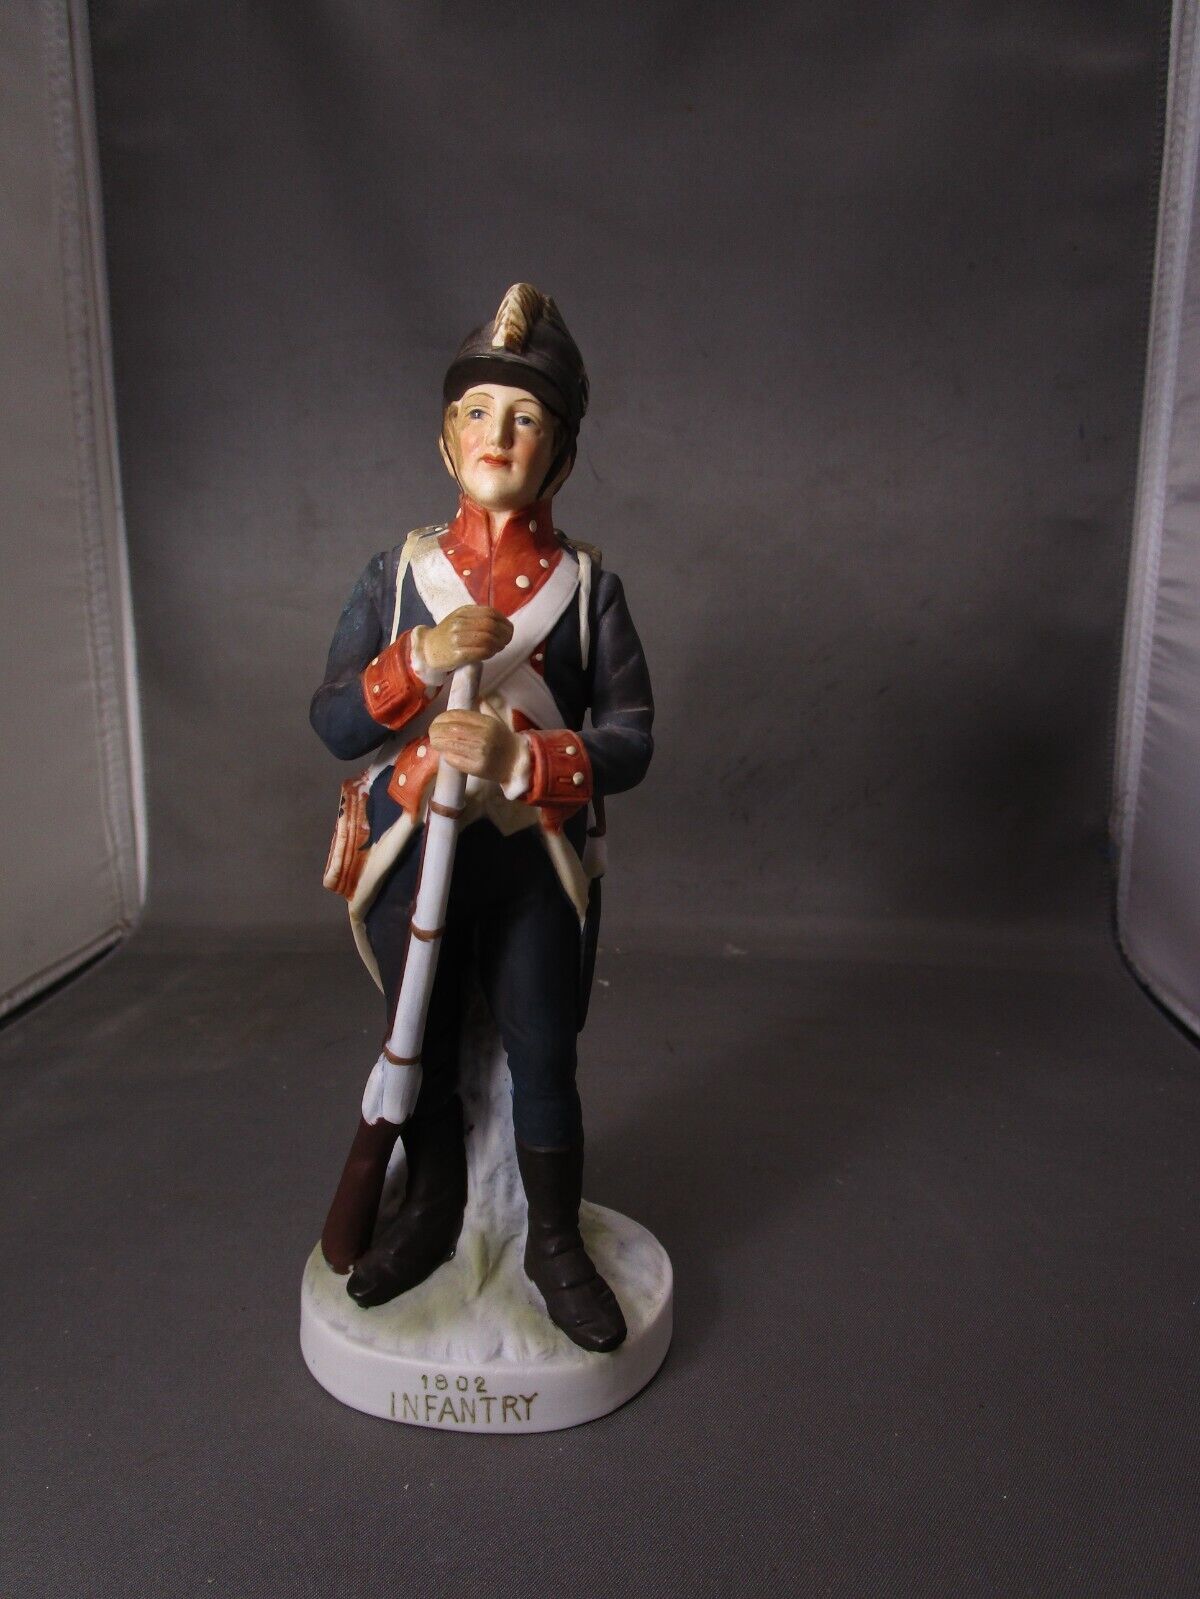 Lefton KW3678 1802 Infantry Figurine       (202)